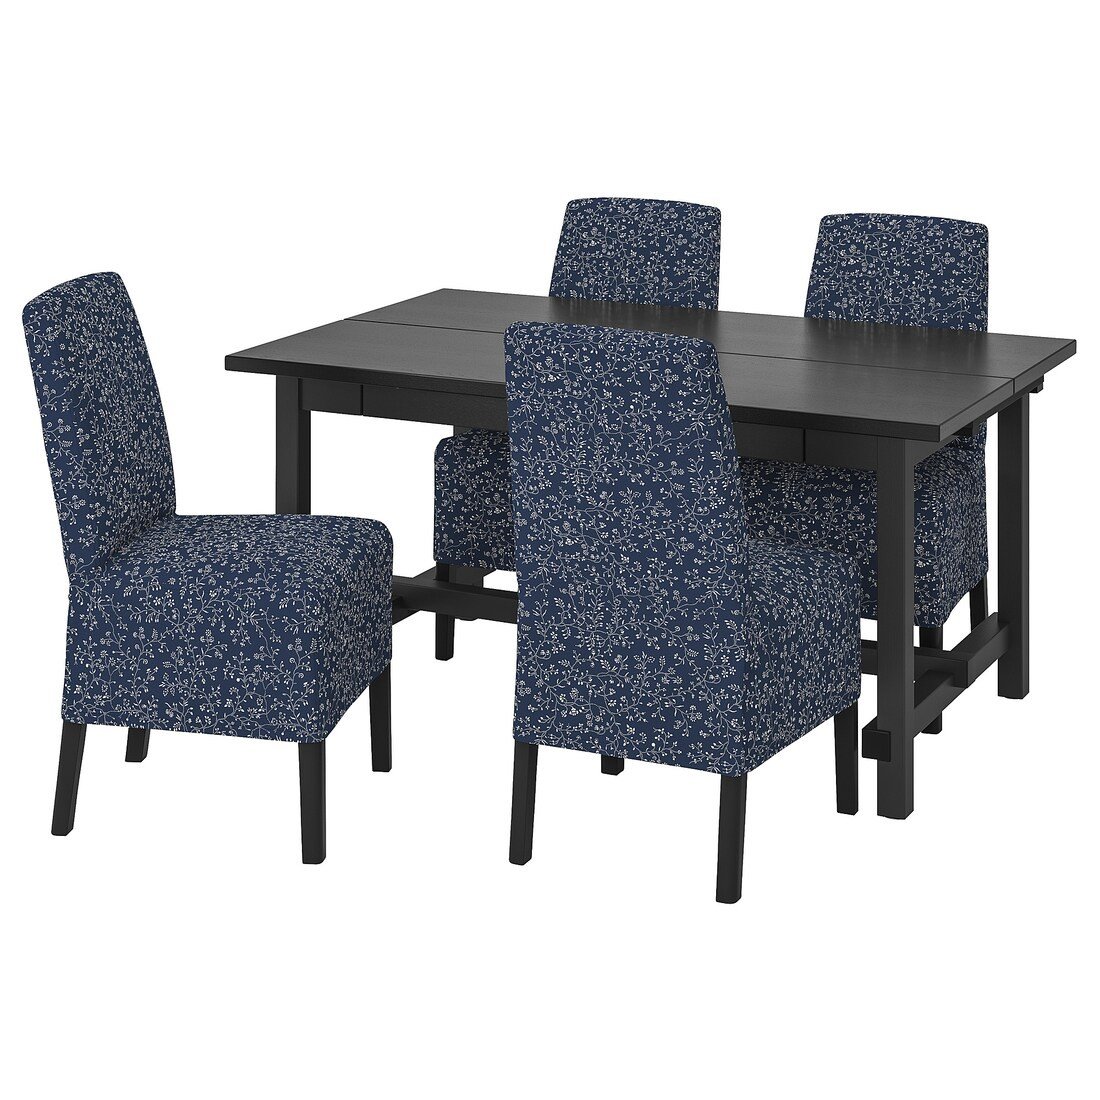 NORDVIKEN / BERGMUND Стол и 4 стула, черный / Ryrane темно-синий, 152/223 см